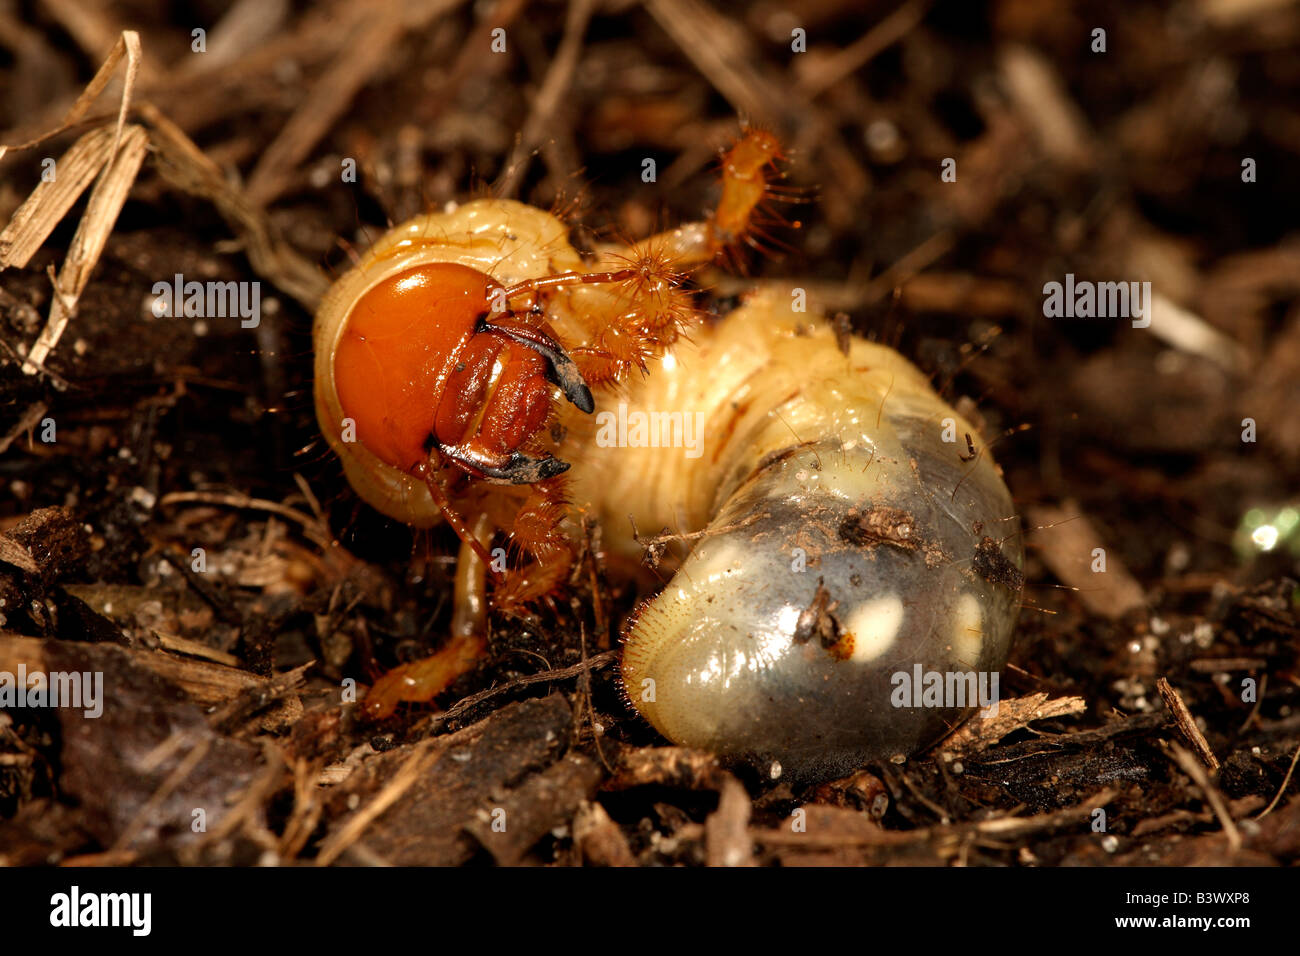 Vita metropolitana beetle larva (ordine Coleoptera), fotografata sulla costa sud del New South Wales, Australia. Foto Stock